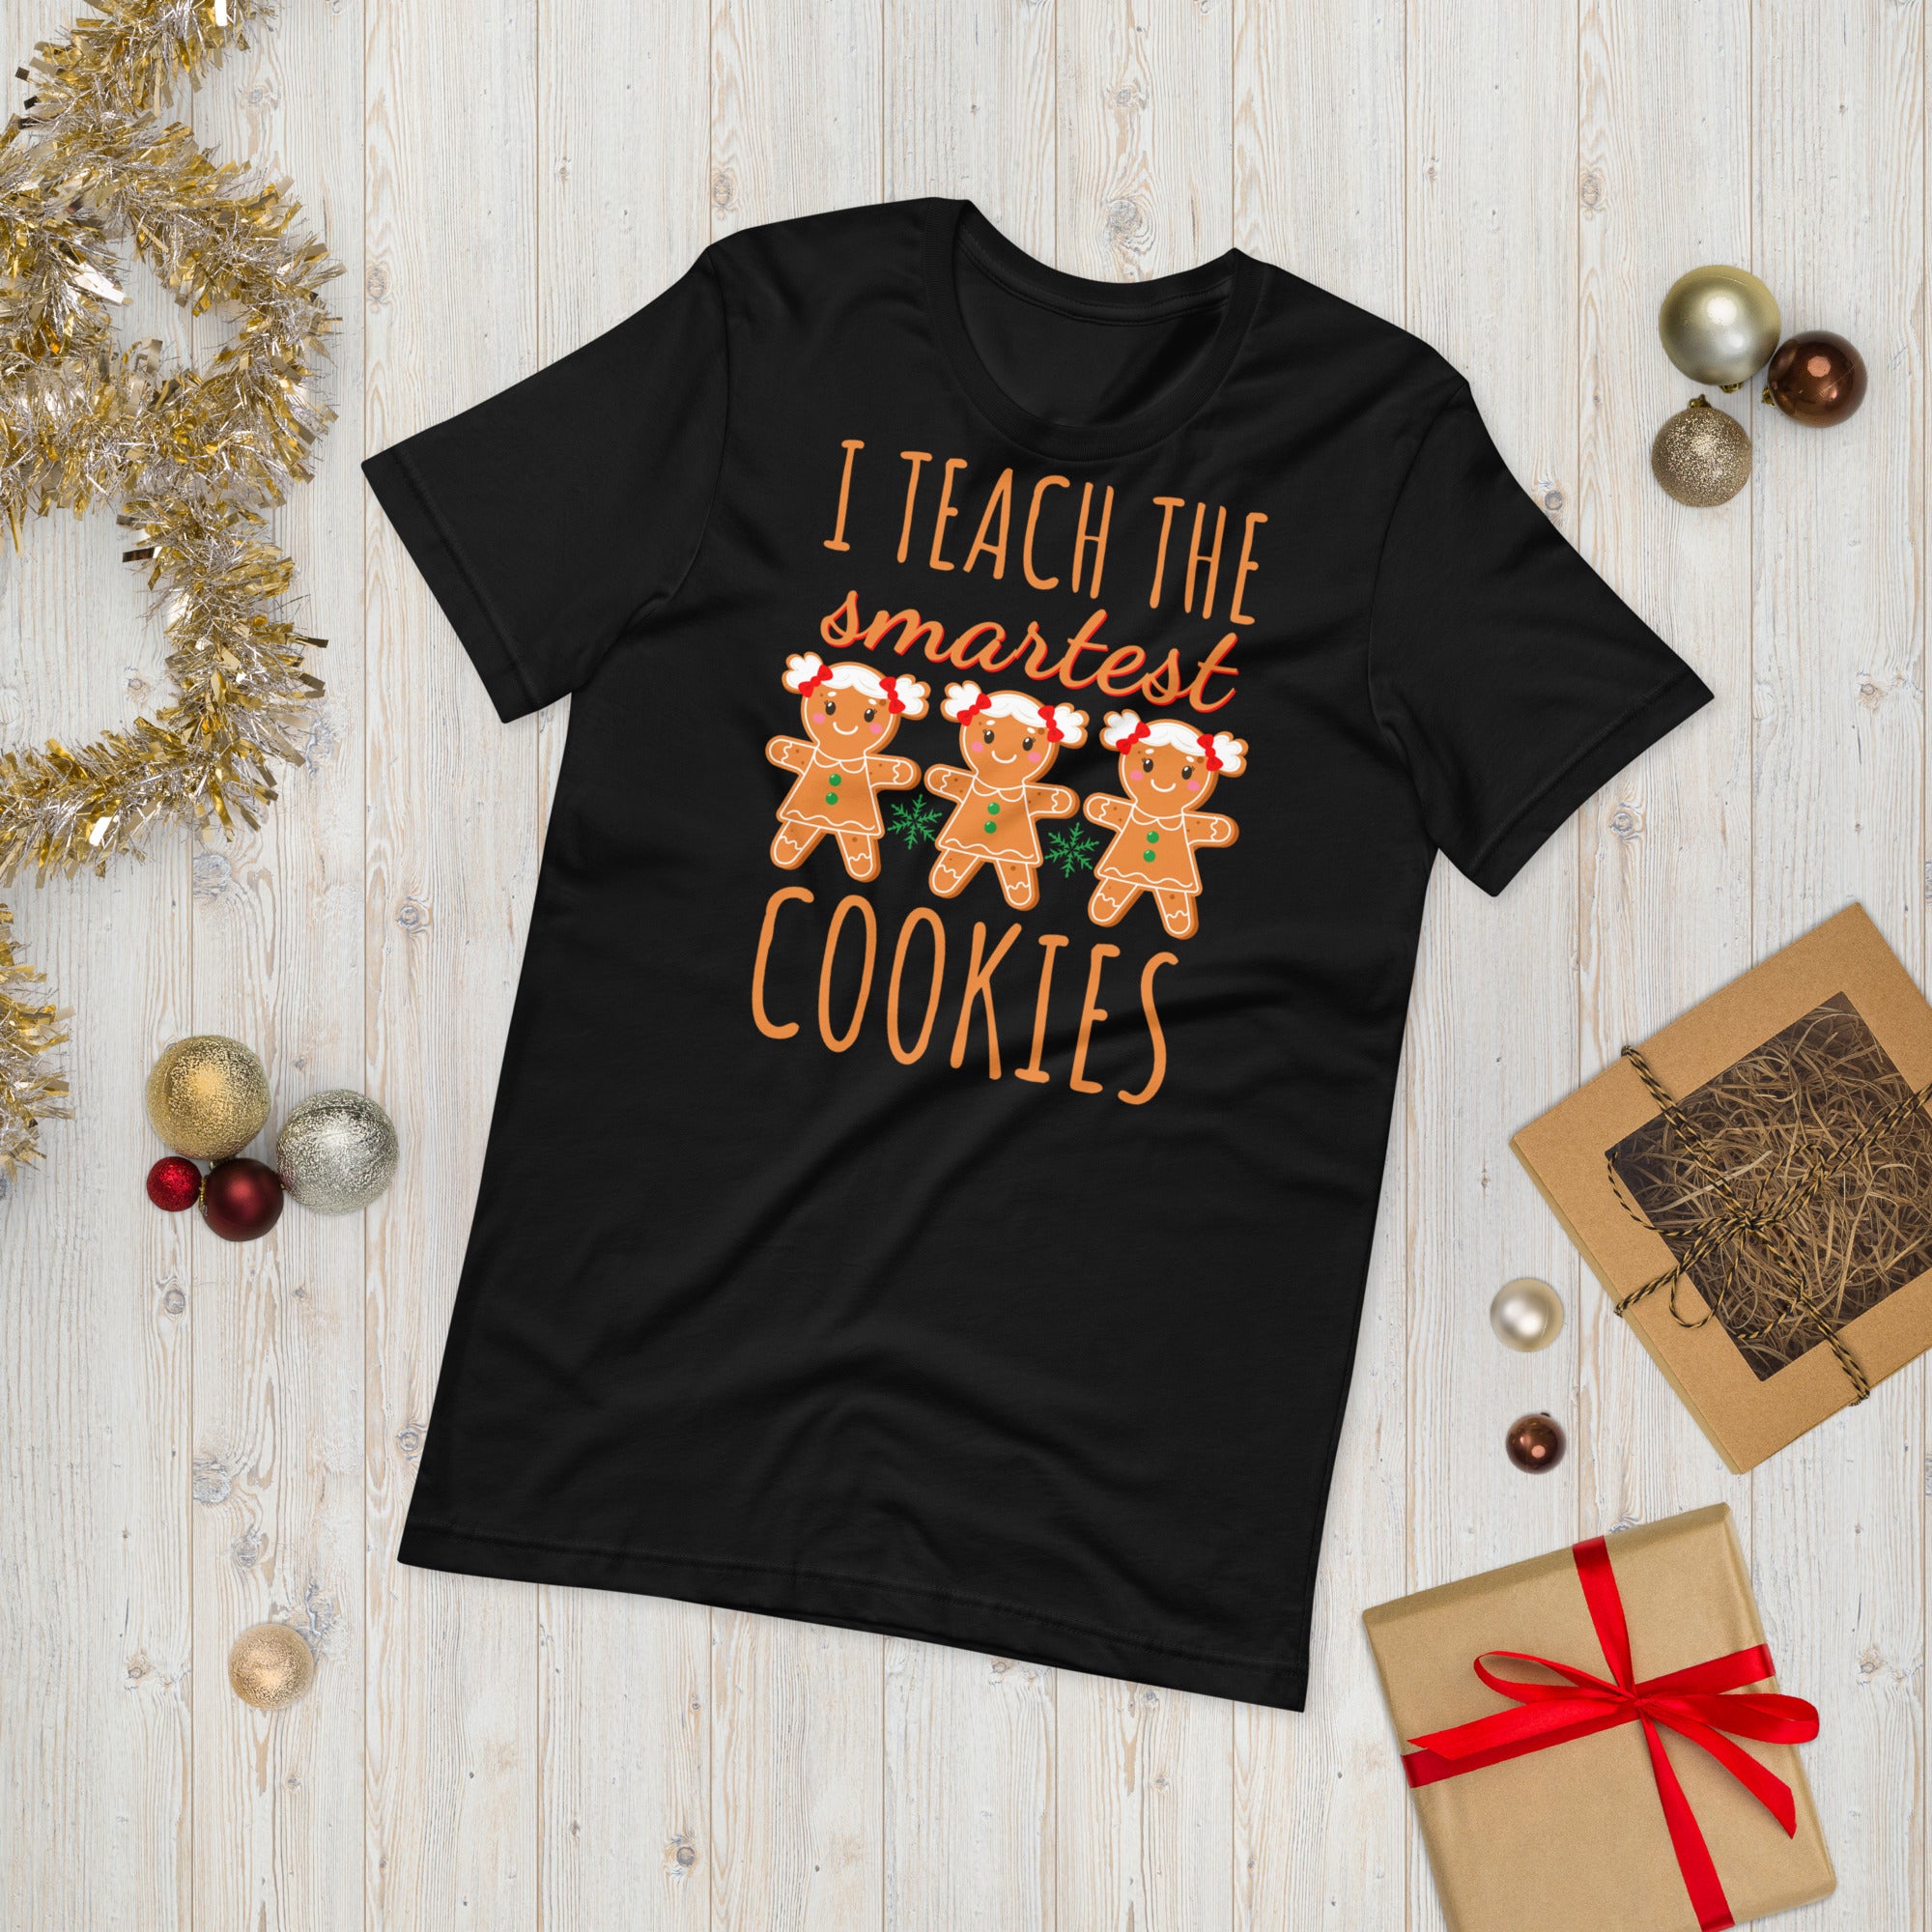 Teacher Christmas Shirt, I Teach the Smartest Cookies Shirts, Christmas Teacher T Shirt, Christmas Shirt, Teacher Christmas Tee, Xmas Gifts - Madeinsea©